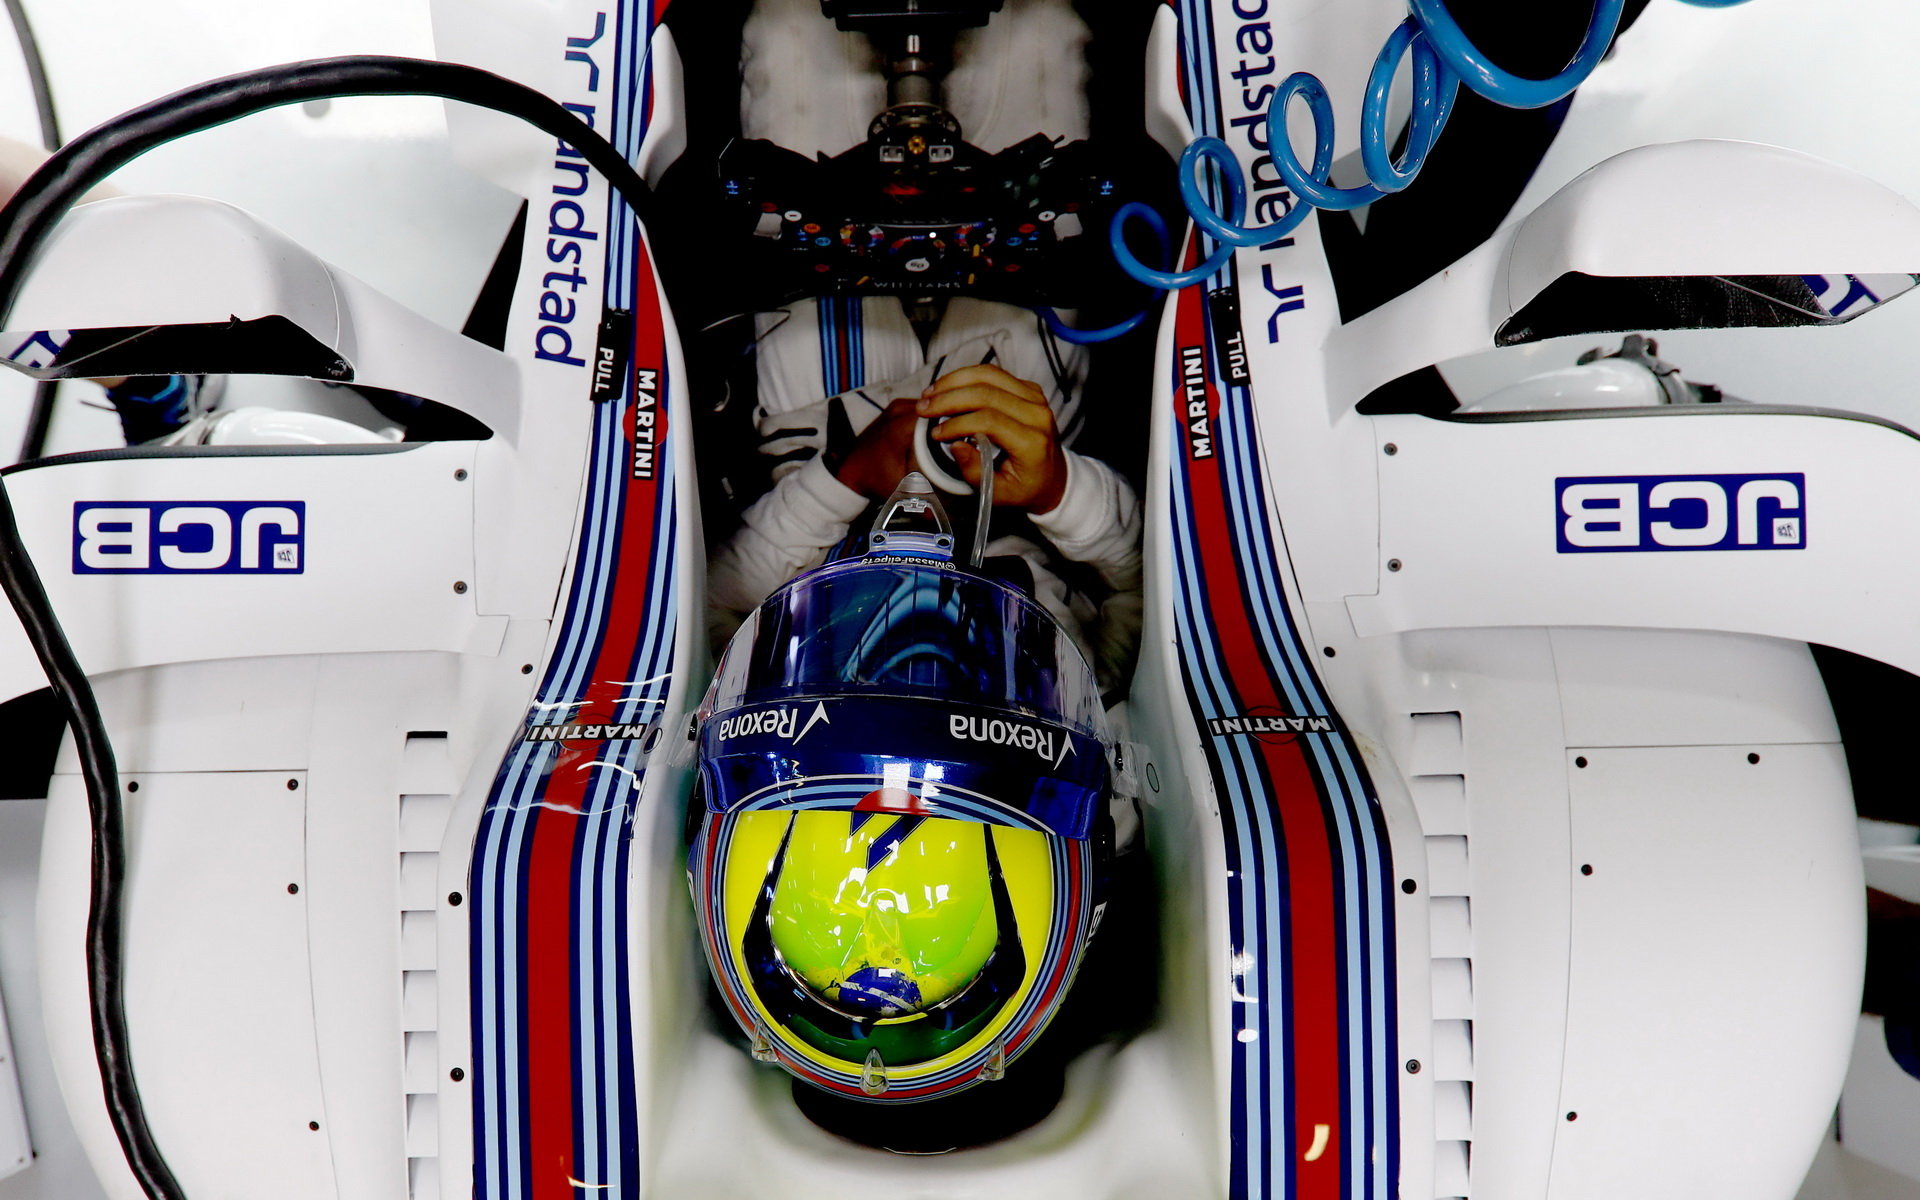 Felipe Massa při pátečním tréninku v Rakousku